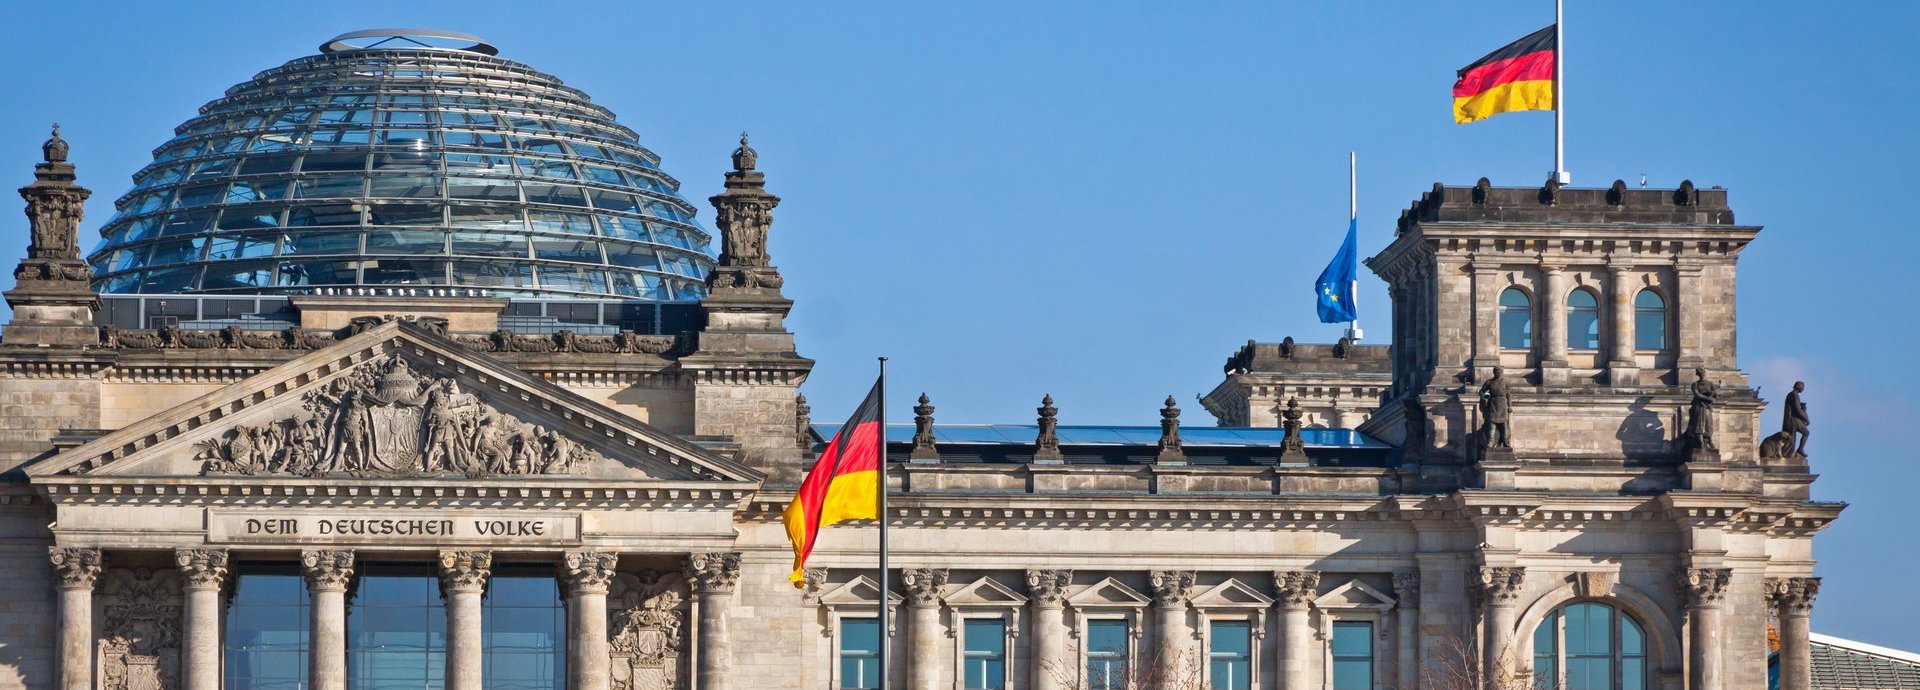 Bundestag mit deutscher Flagge und blauem wolkenlosem Himmel